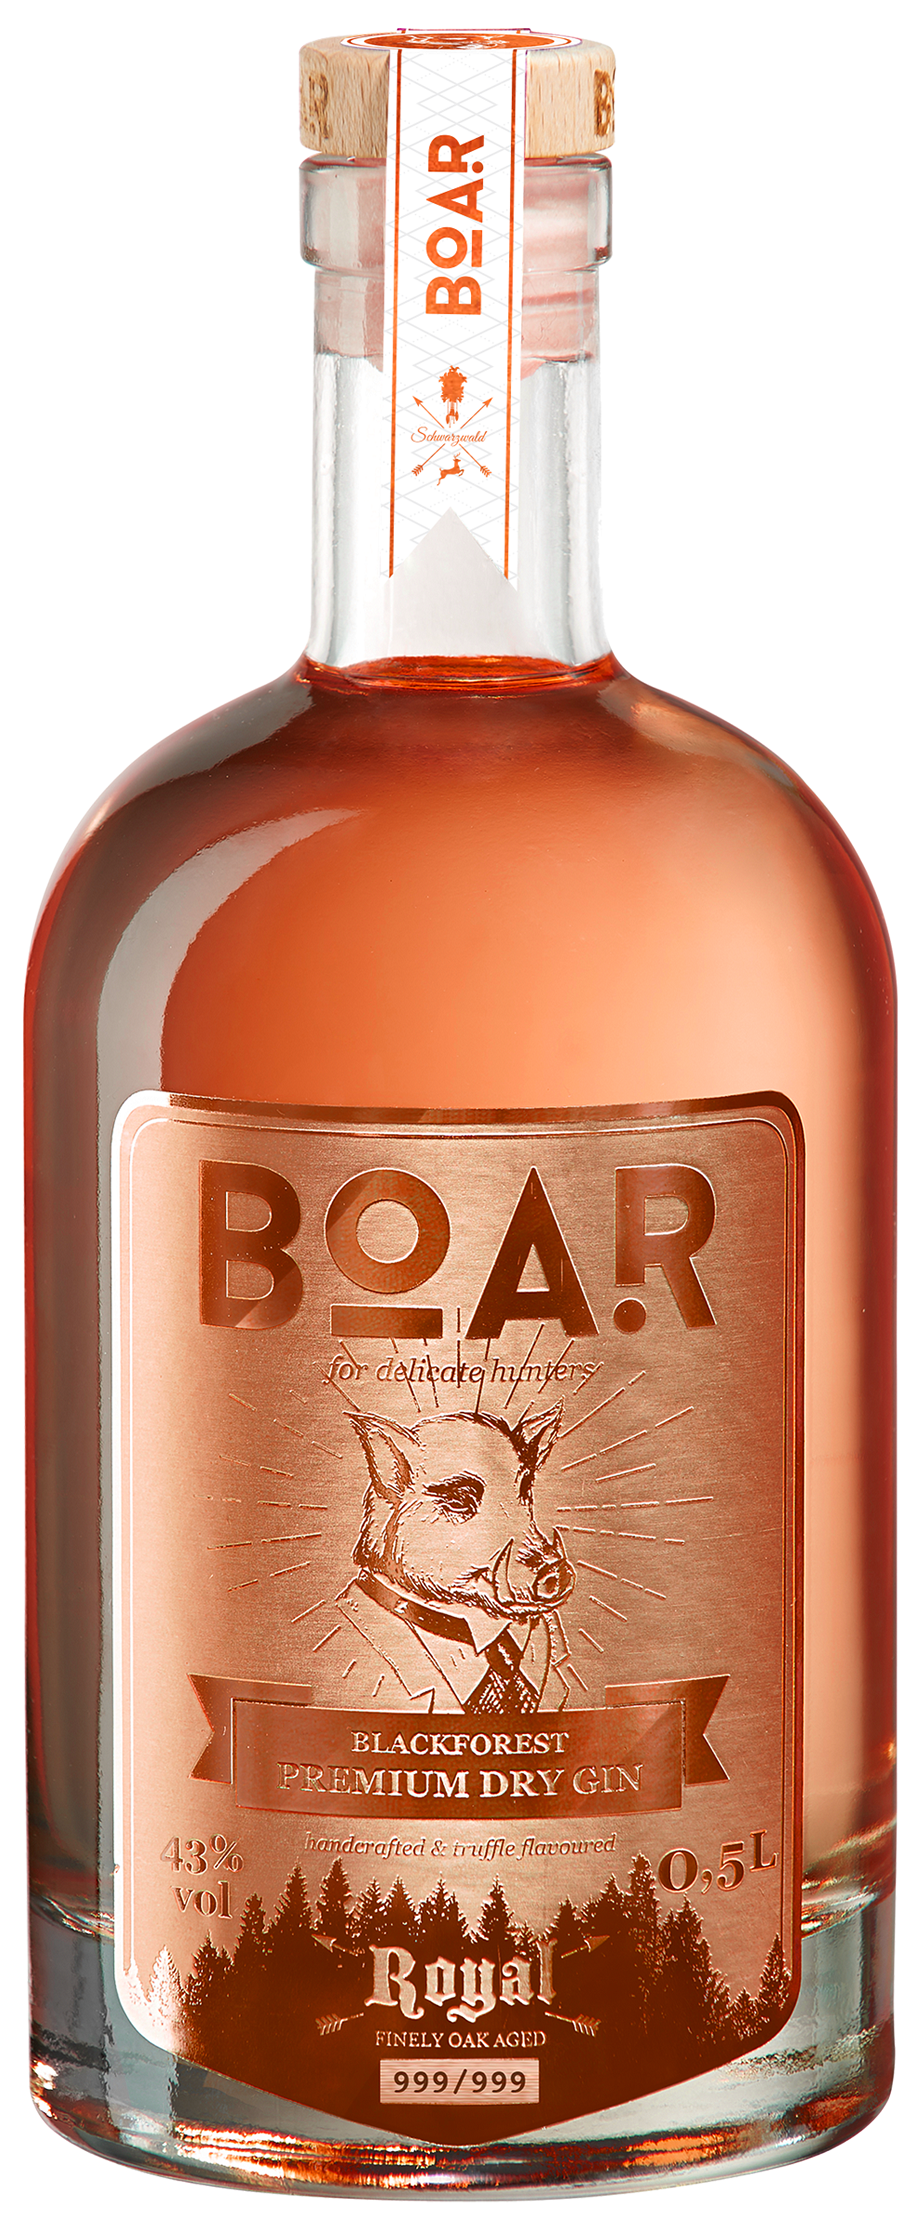 Boar Blackforest Premium Dry Gin Edition Royal RUBIN 0,5l 43% vol.